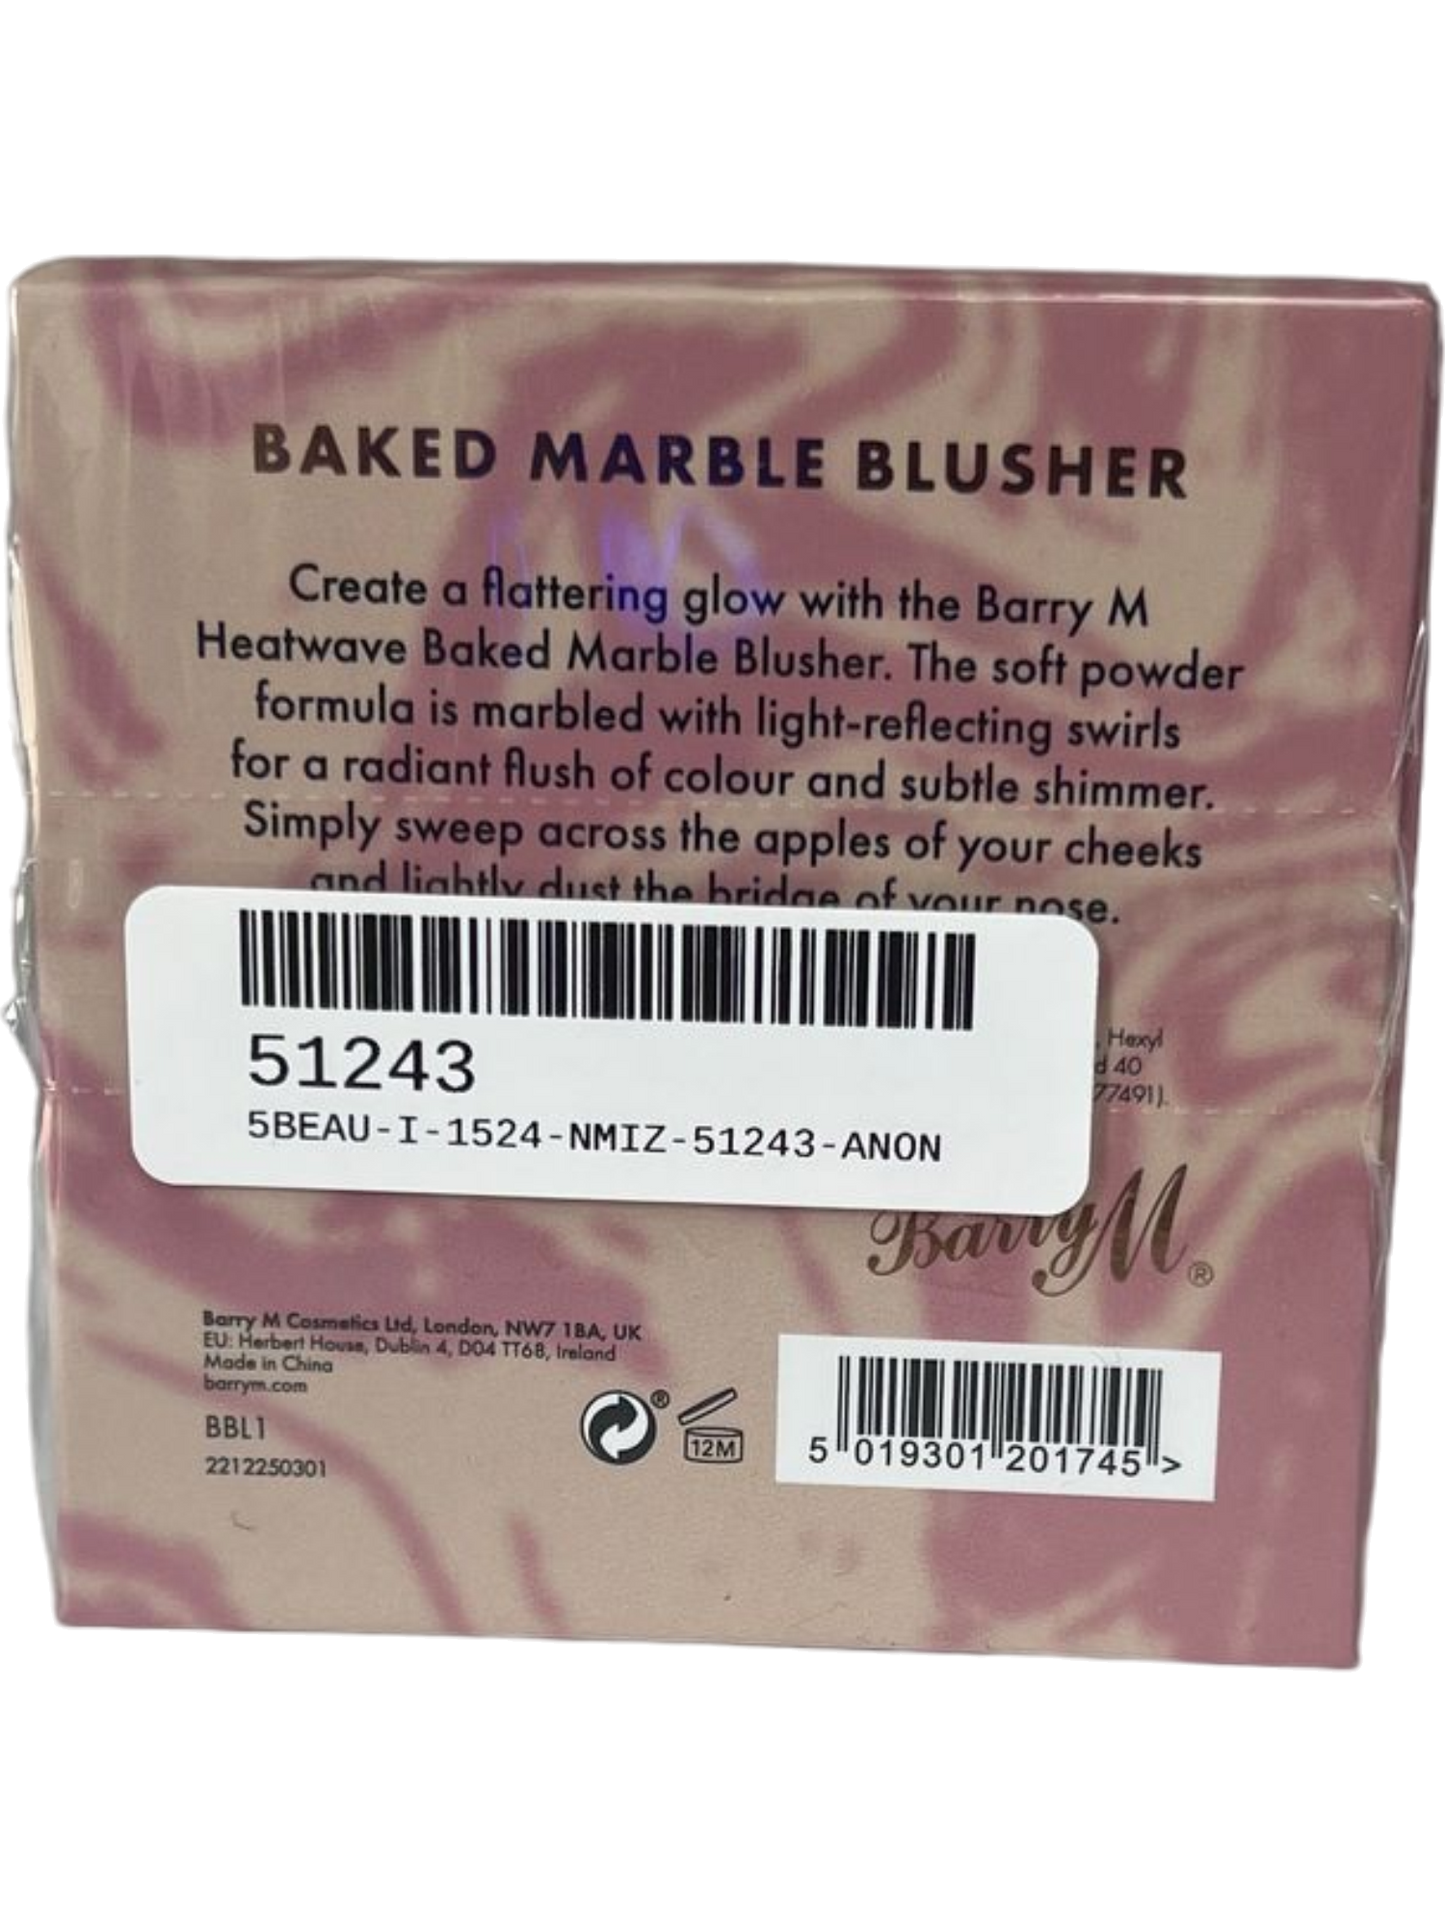 Barry M Coastal-Pink Heatwave Baked Marble Blusher